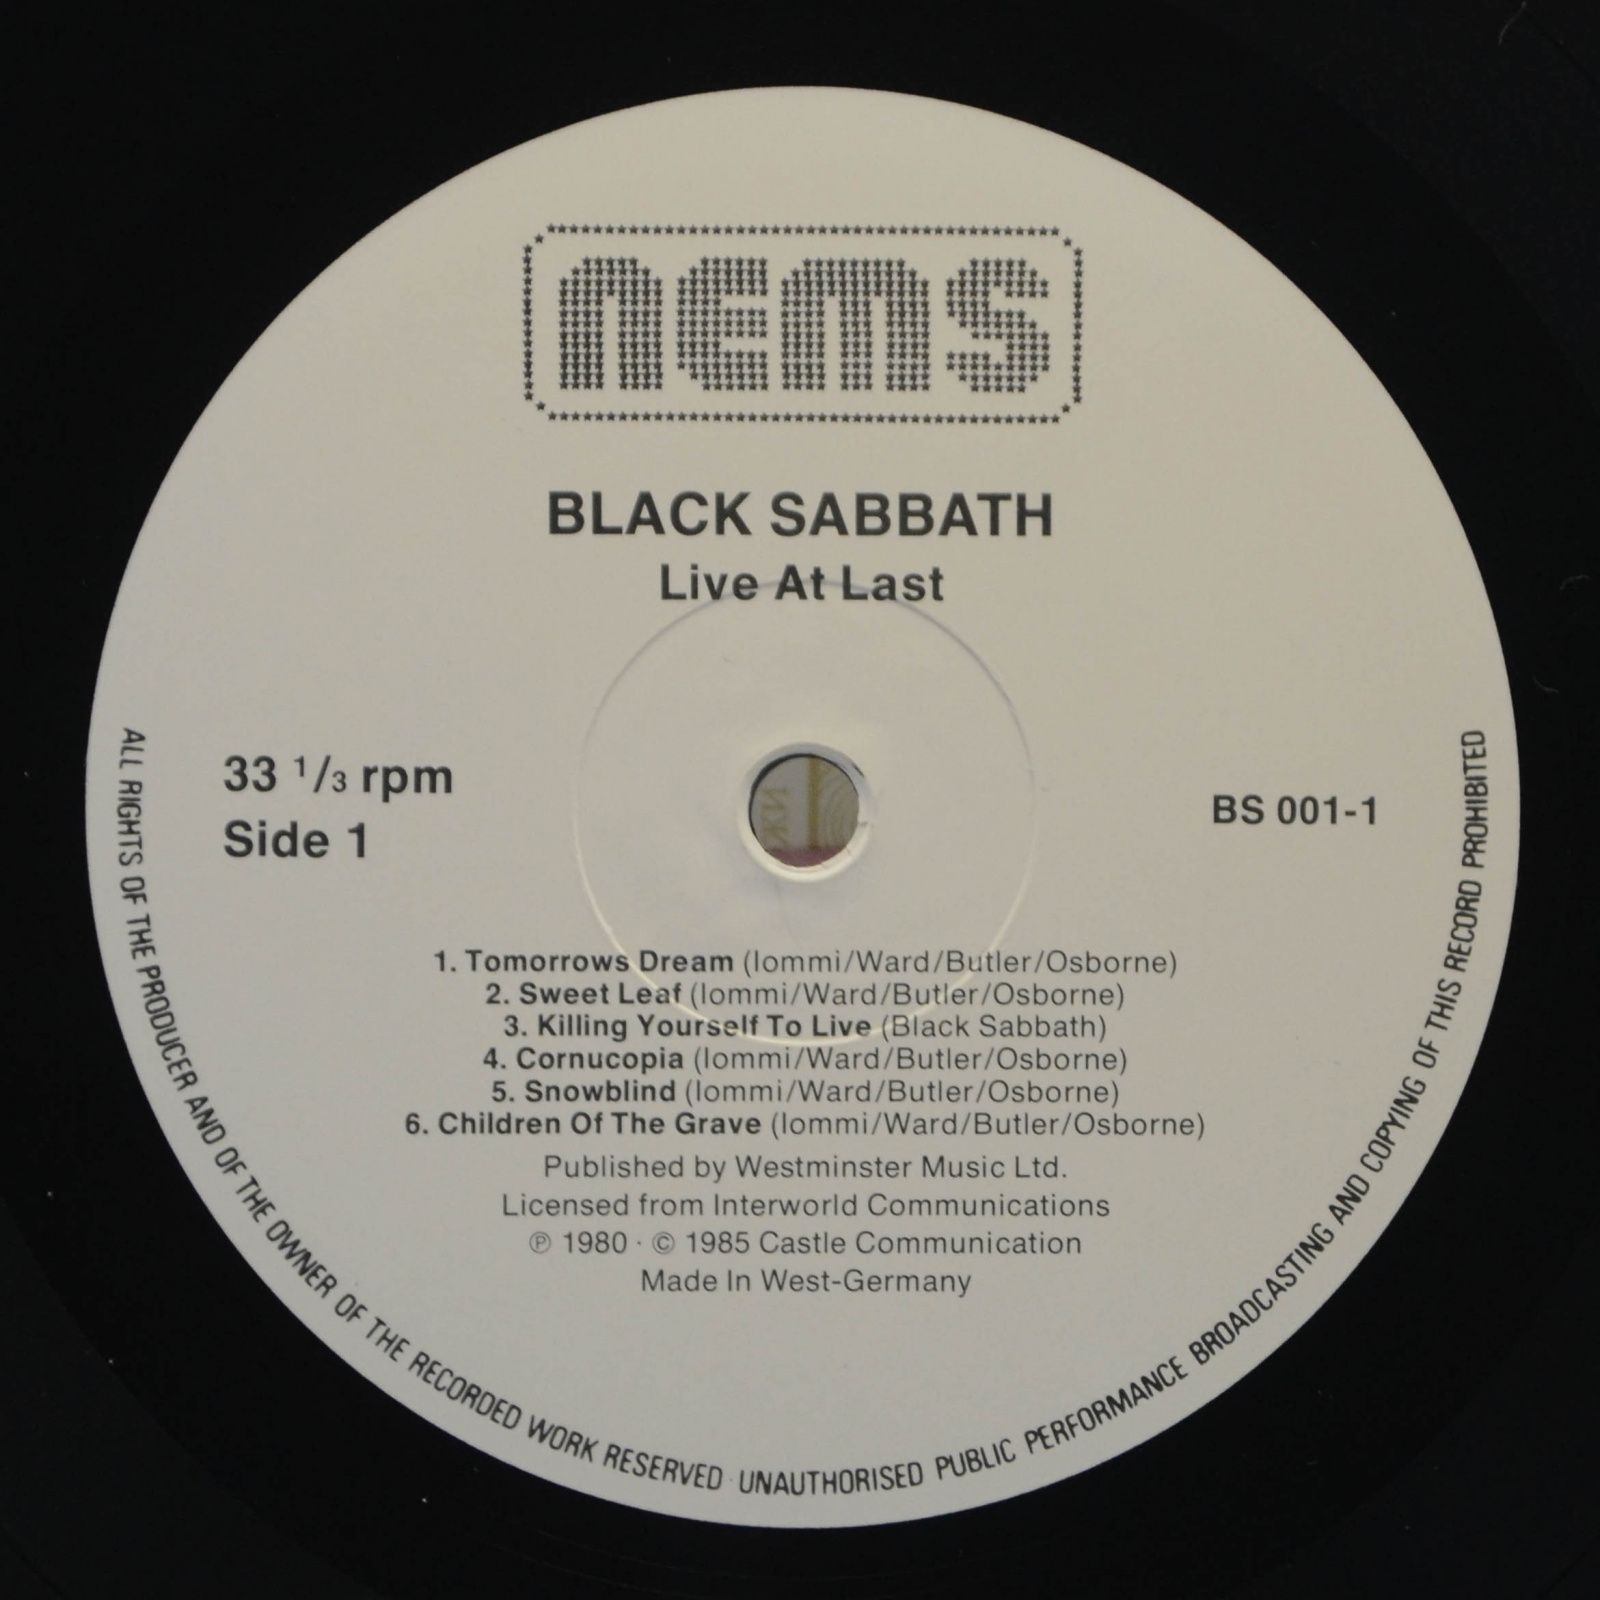 Black Sabbath — Live At Last, 1980